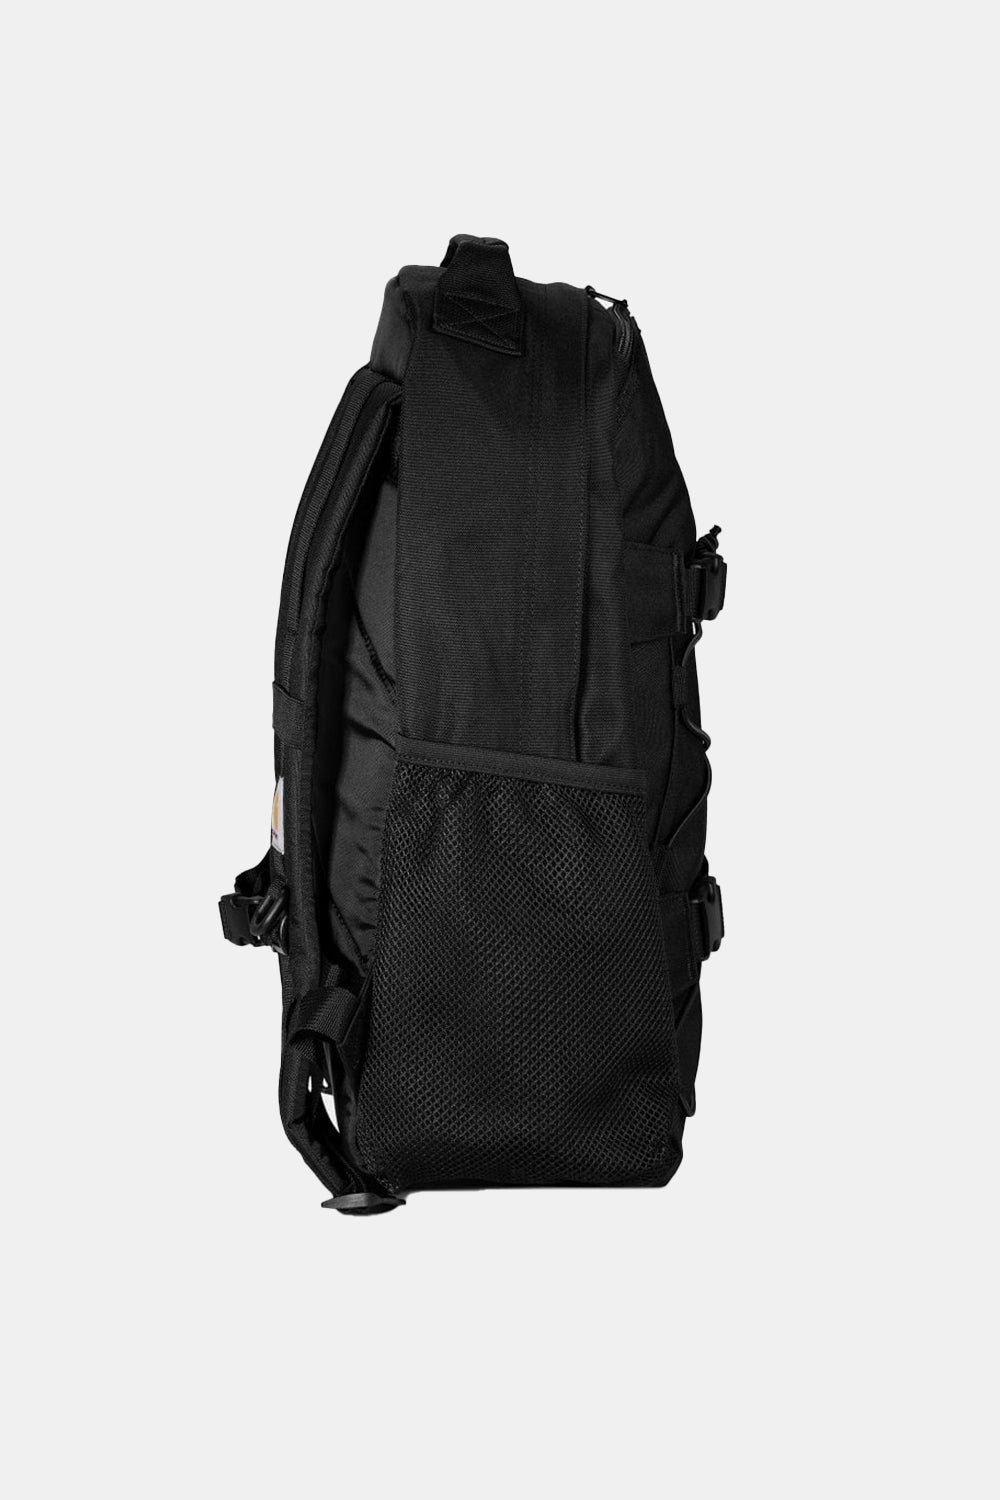 Carhartt WIP Recycled Kickflip Backpack (Black)